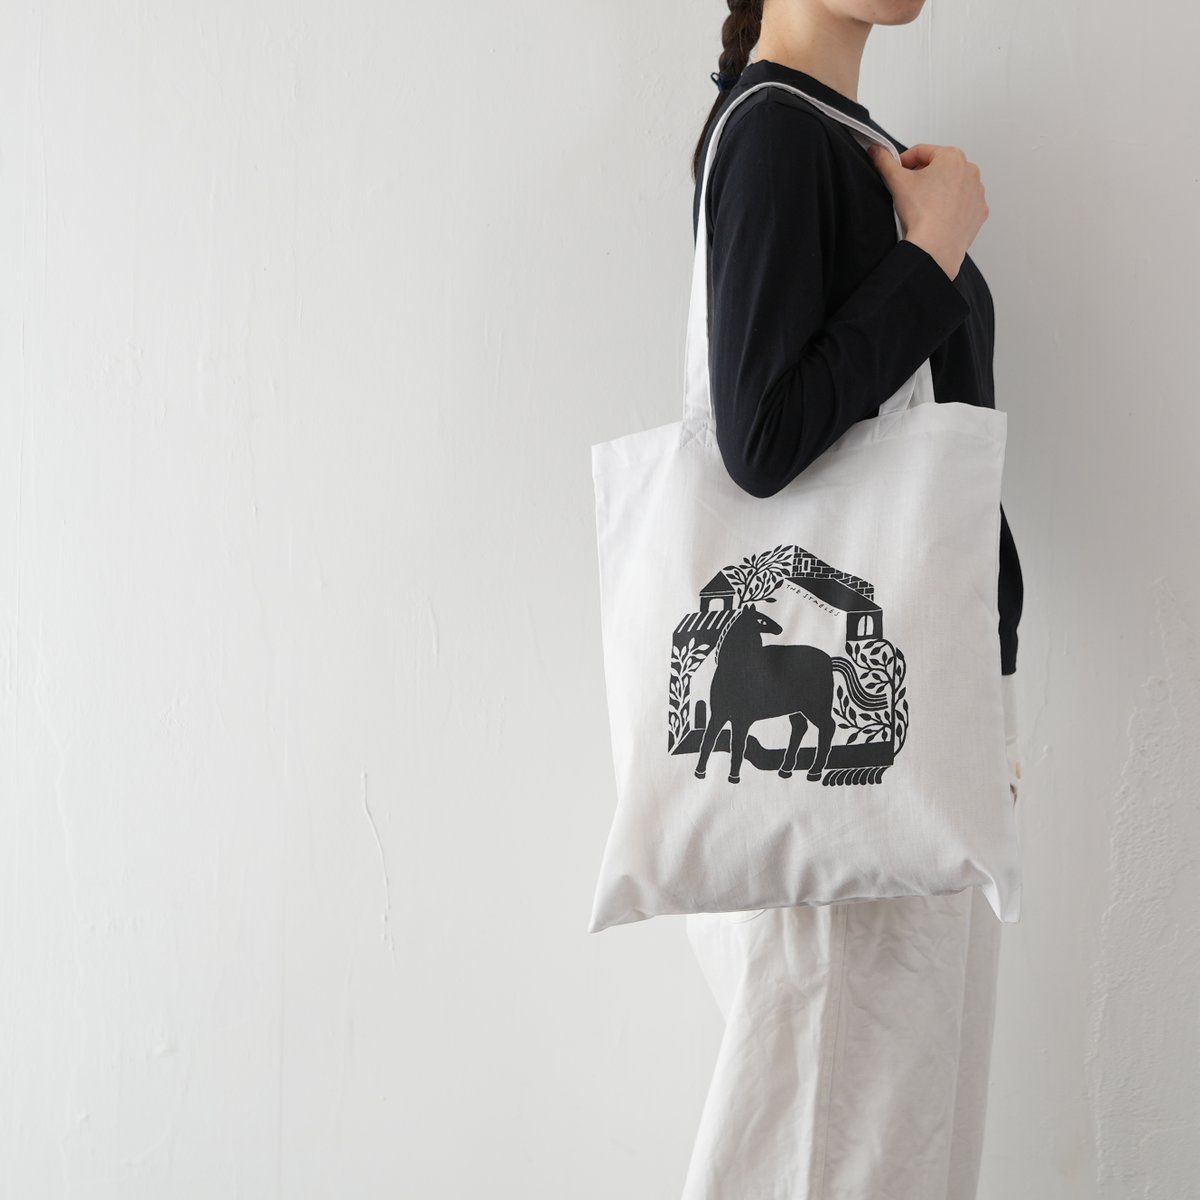 花松あゆみさんの展示
'LETTERS'から

6jumbopinsさんにお願いした
トートバッグが
刷り上がってまいりました。
thestables.jp/journal/journa…

オンラインショップ
shop.thestables.jp/?mode=grp&gid=…